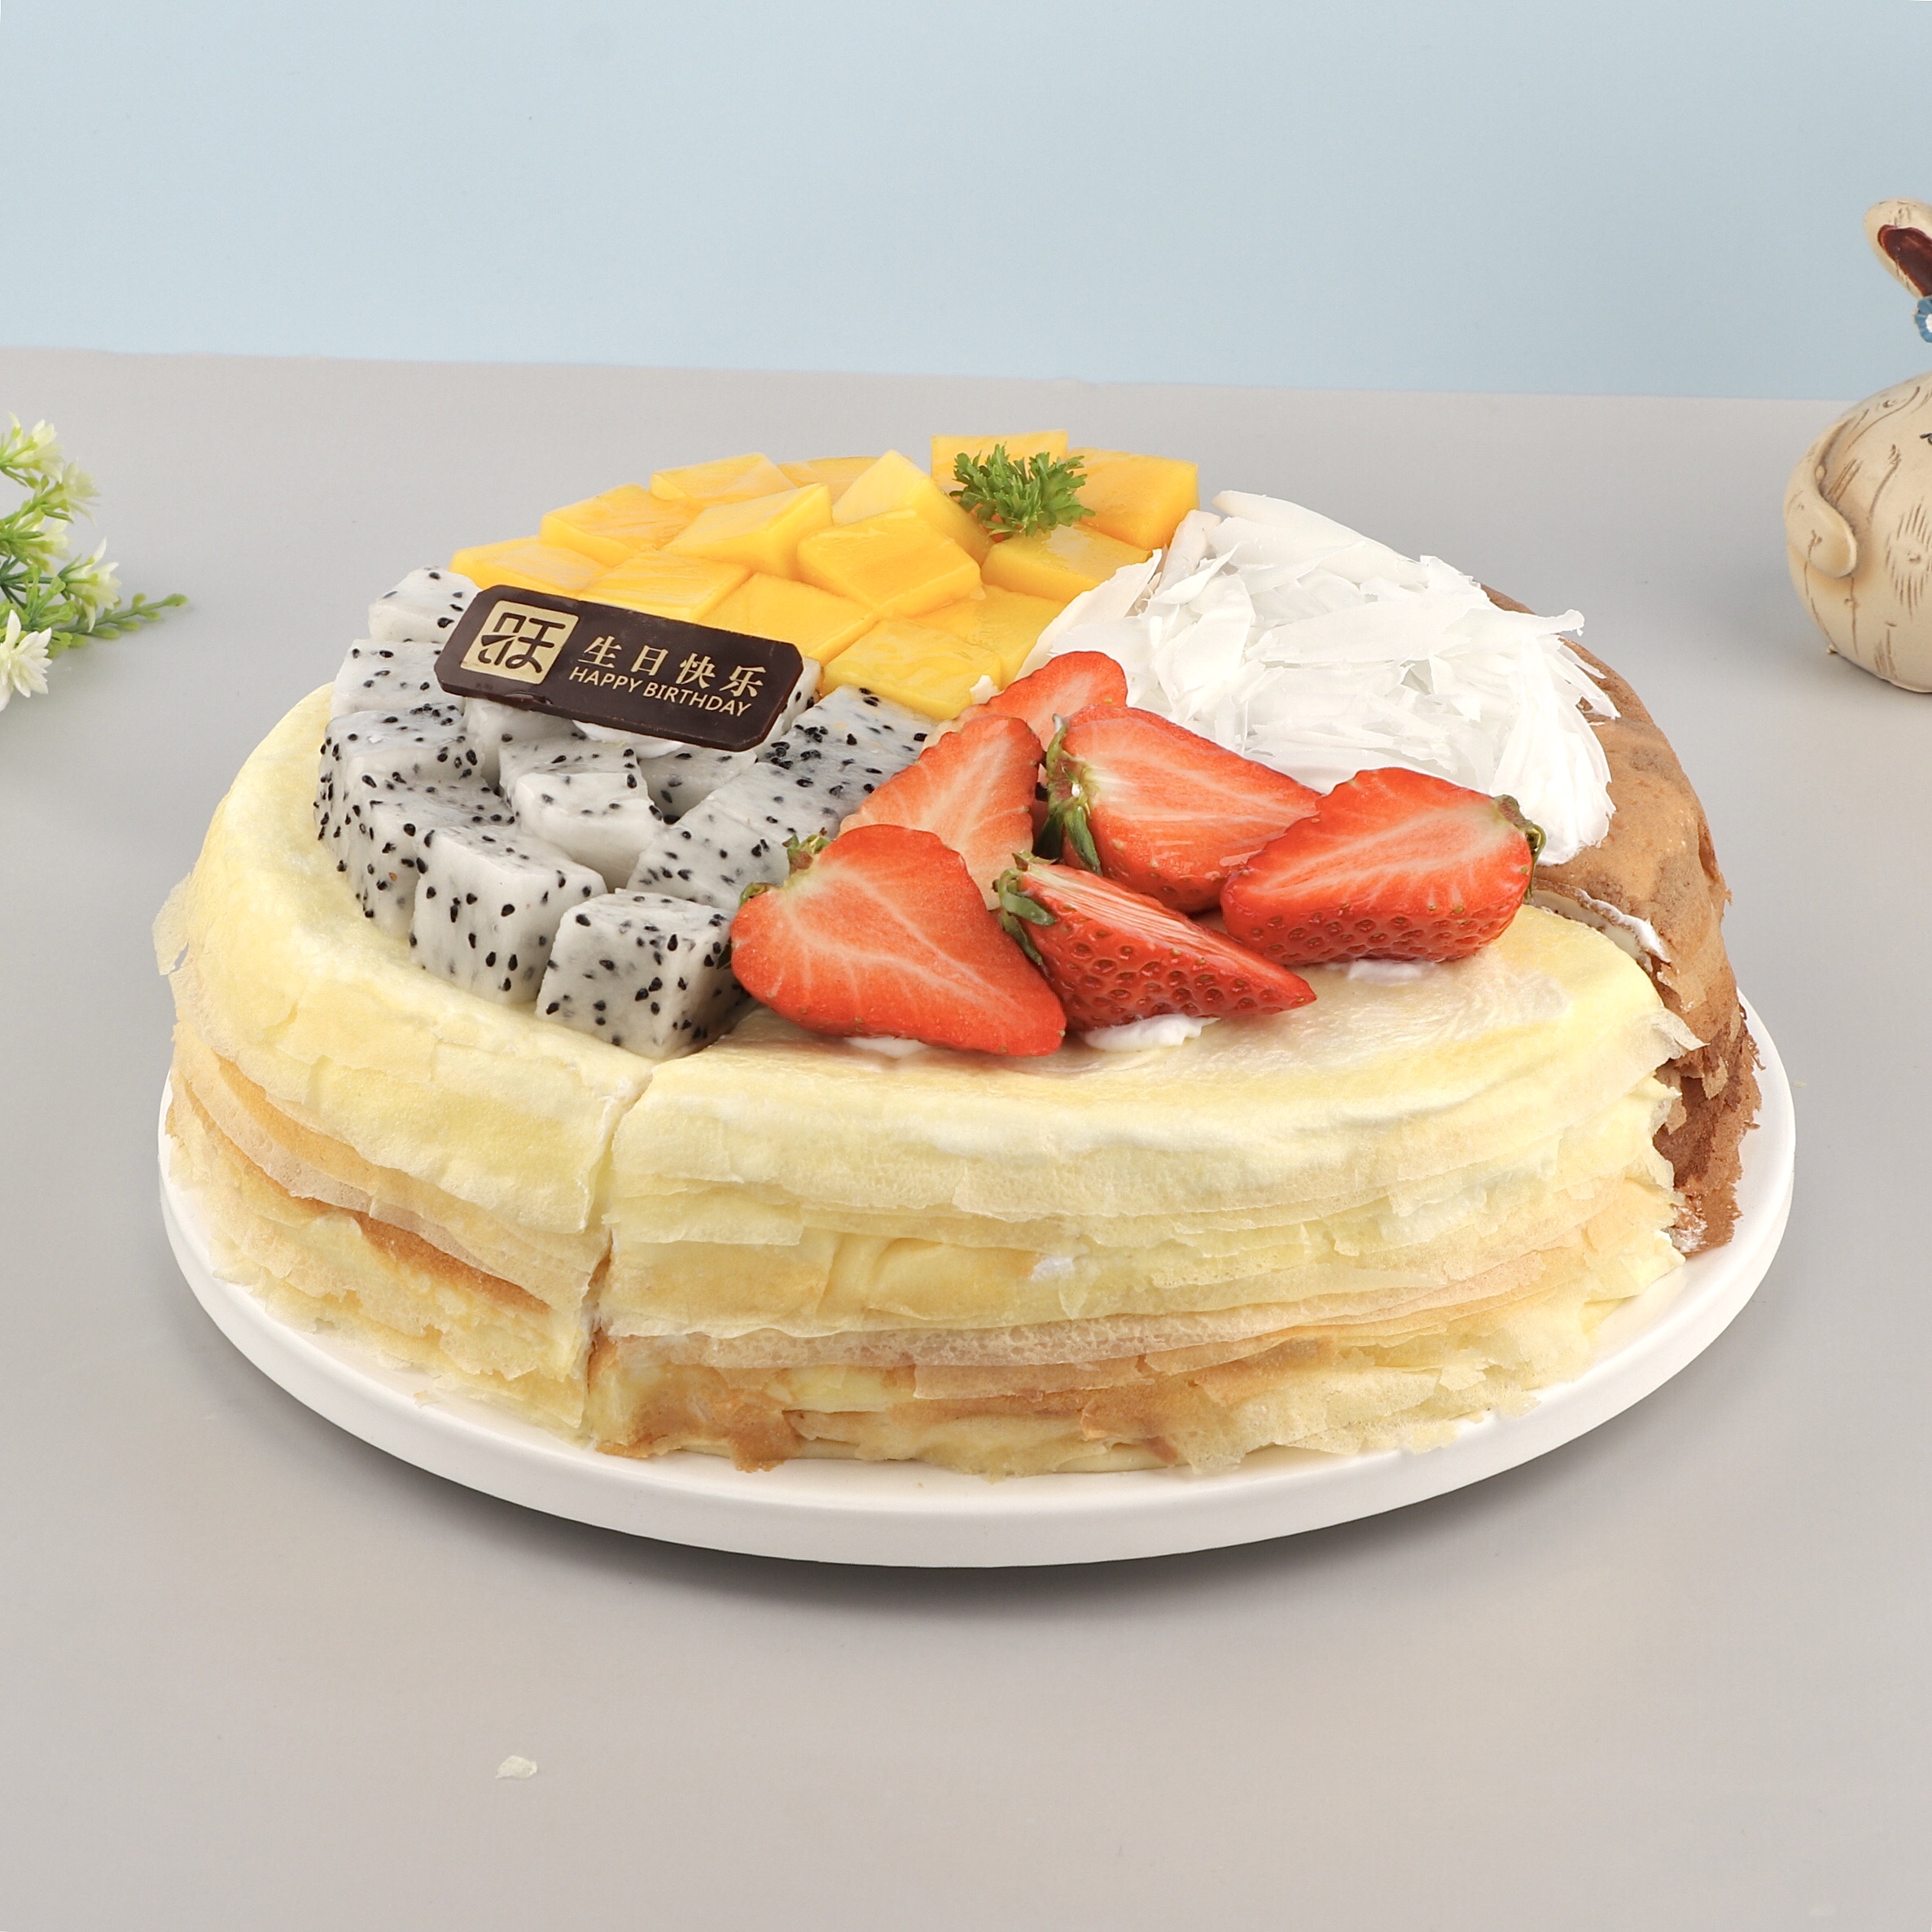 【限时特惠】四拼千层--芒果/榴莲/栗子/巧克力四个口味拼成，一个蛋糕多种口味